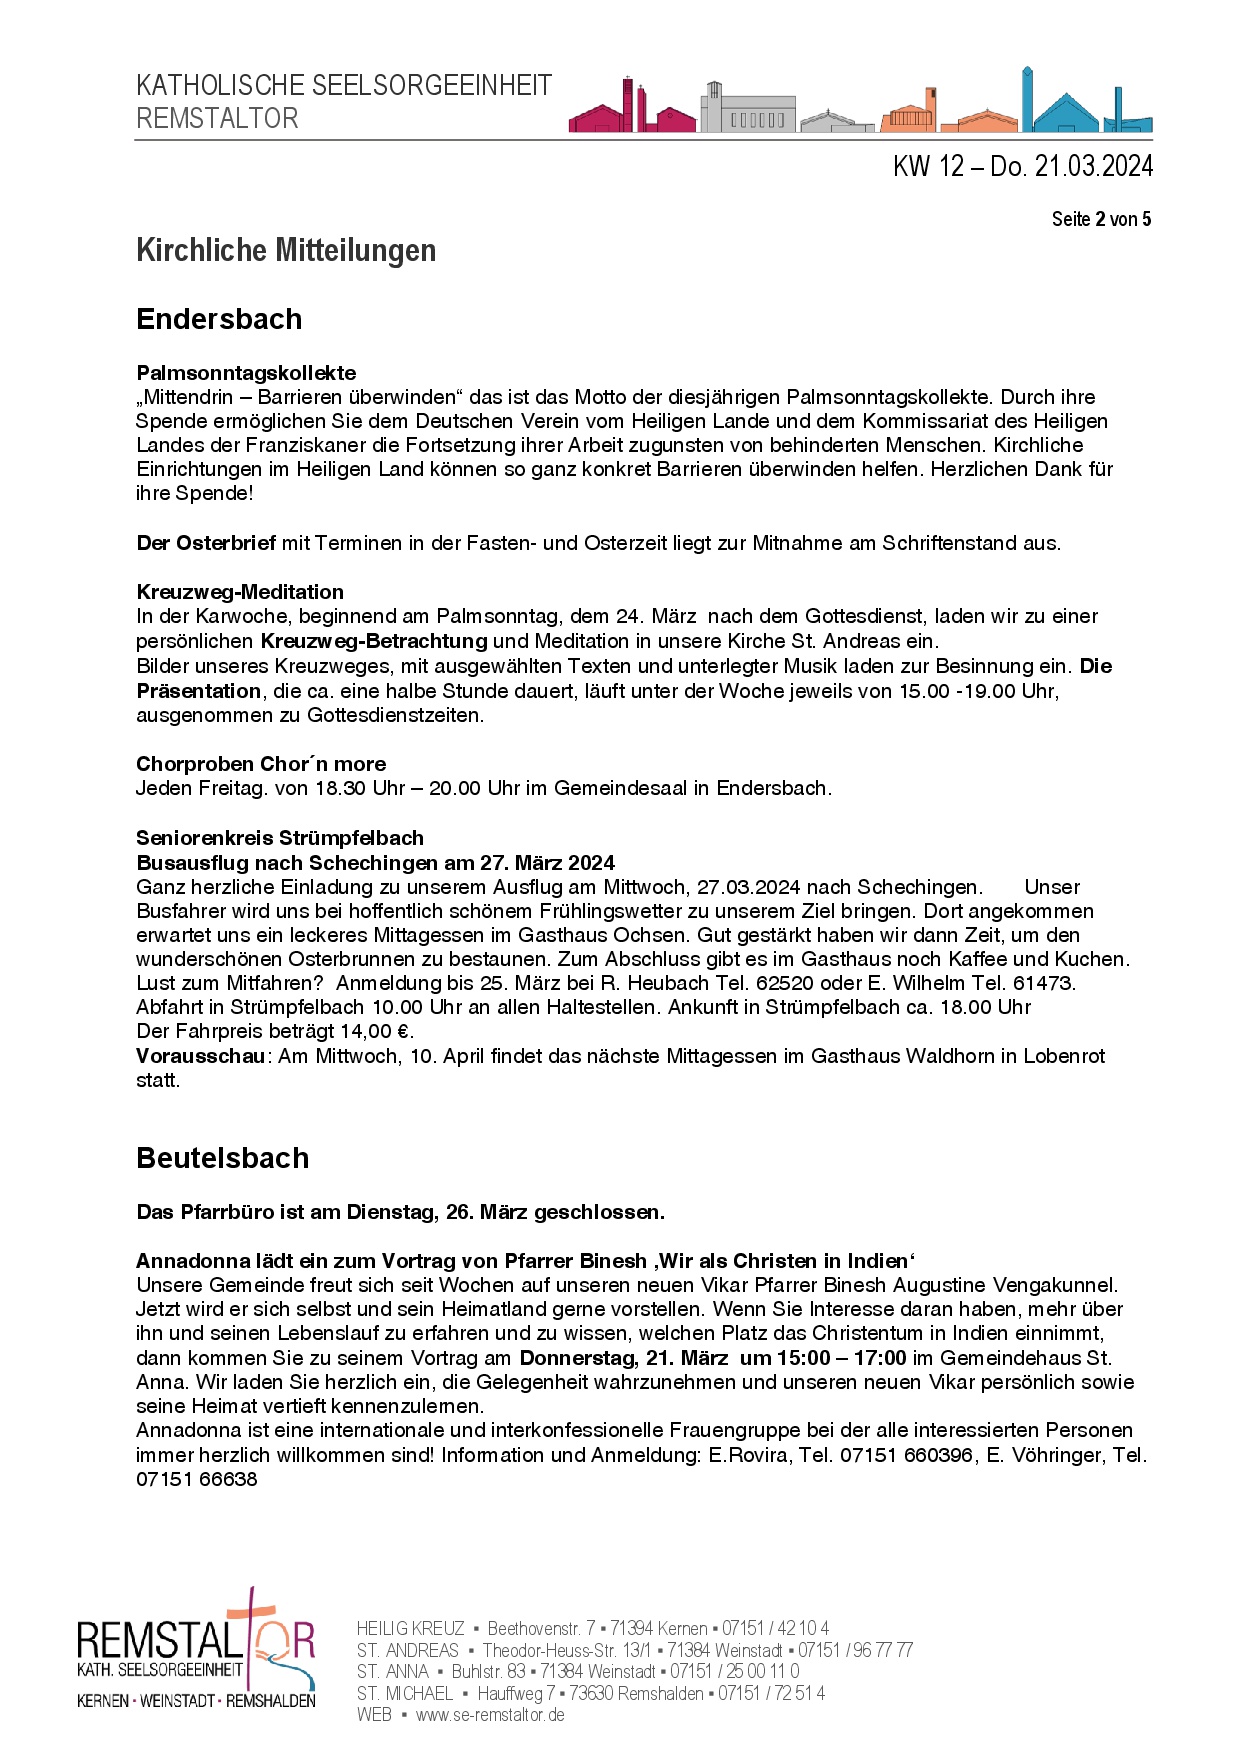 Kirchliche Mitteilungen KW12 21.02.2024 0002